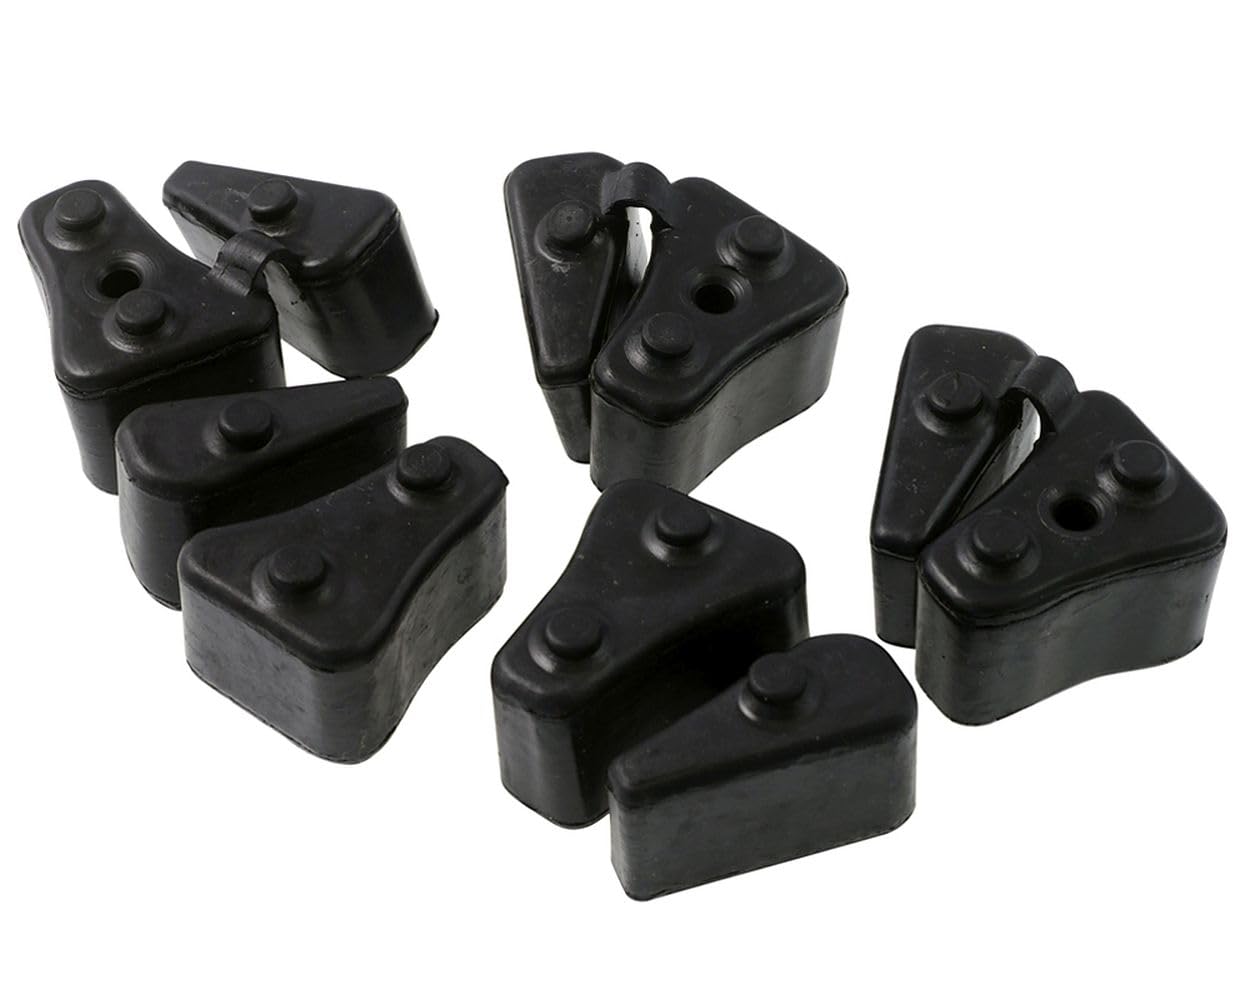 Ruckdämpfer Hinterrad kompatibel für Honda VTR 1000 F, 97-00, XL 1000 Varadero, 97-00, 5er Satz von 2EXTREME